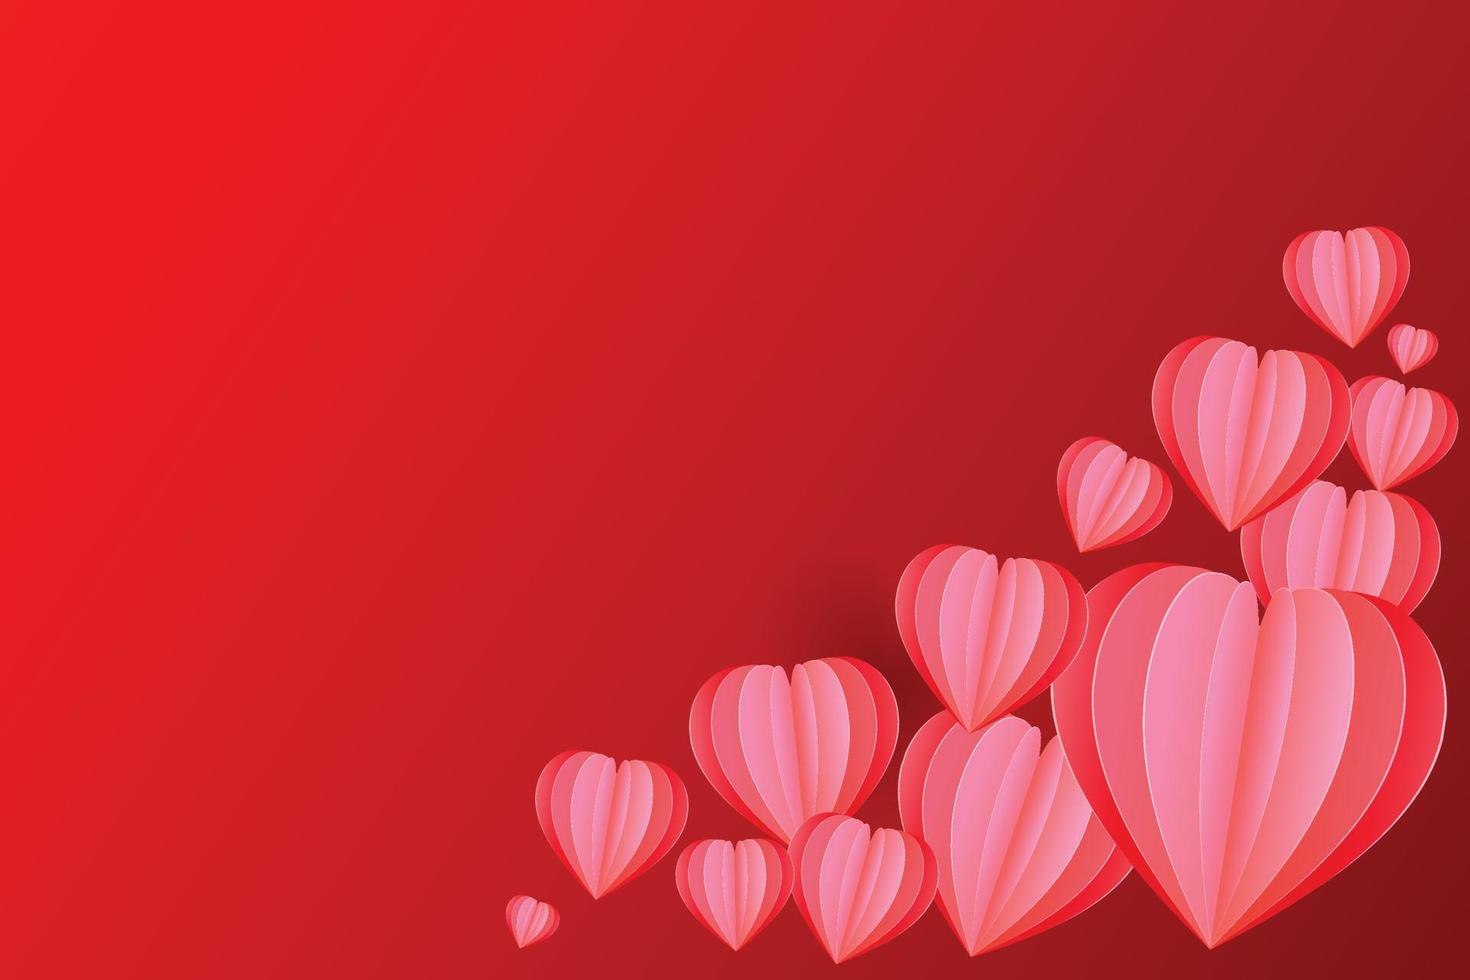 corte de papel en forma de corazón rojo, ilustración para el día de san valentín, día de la madre o día del amor, tarjeta de felicitación vectorial. vector